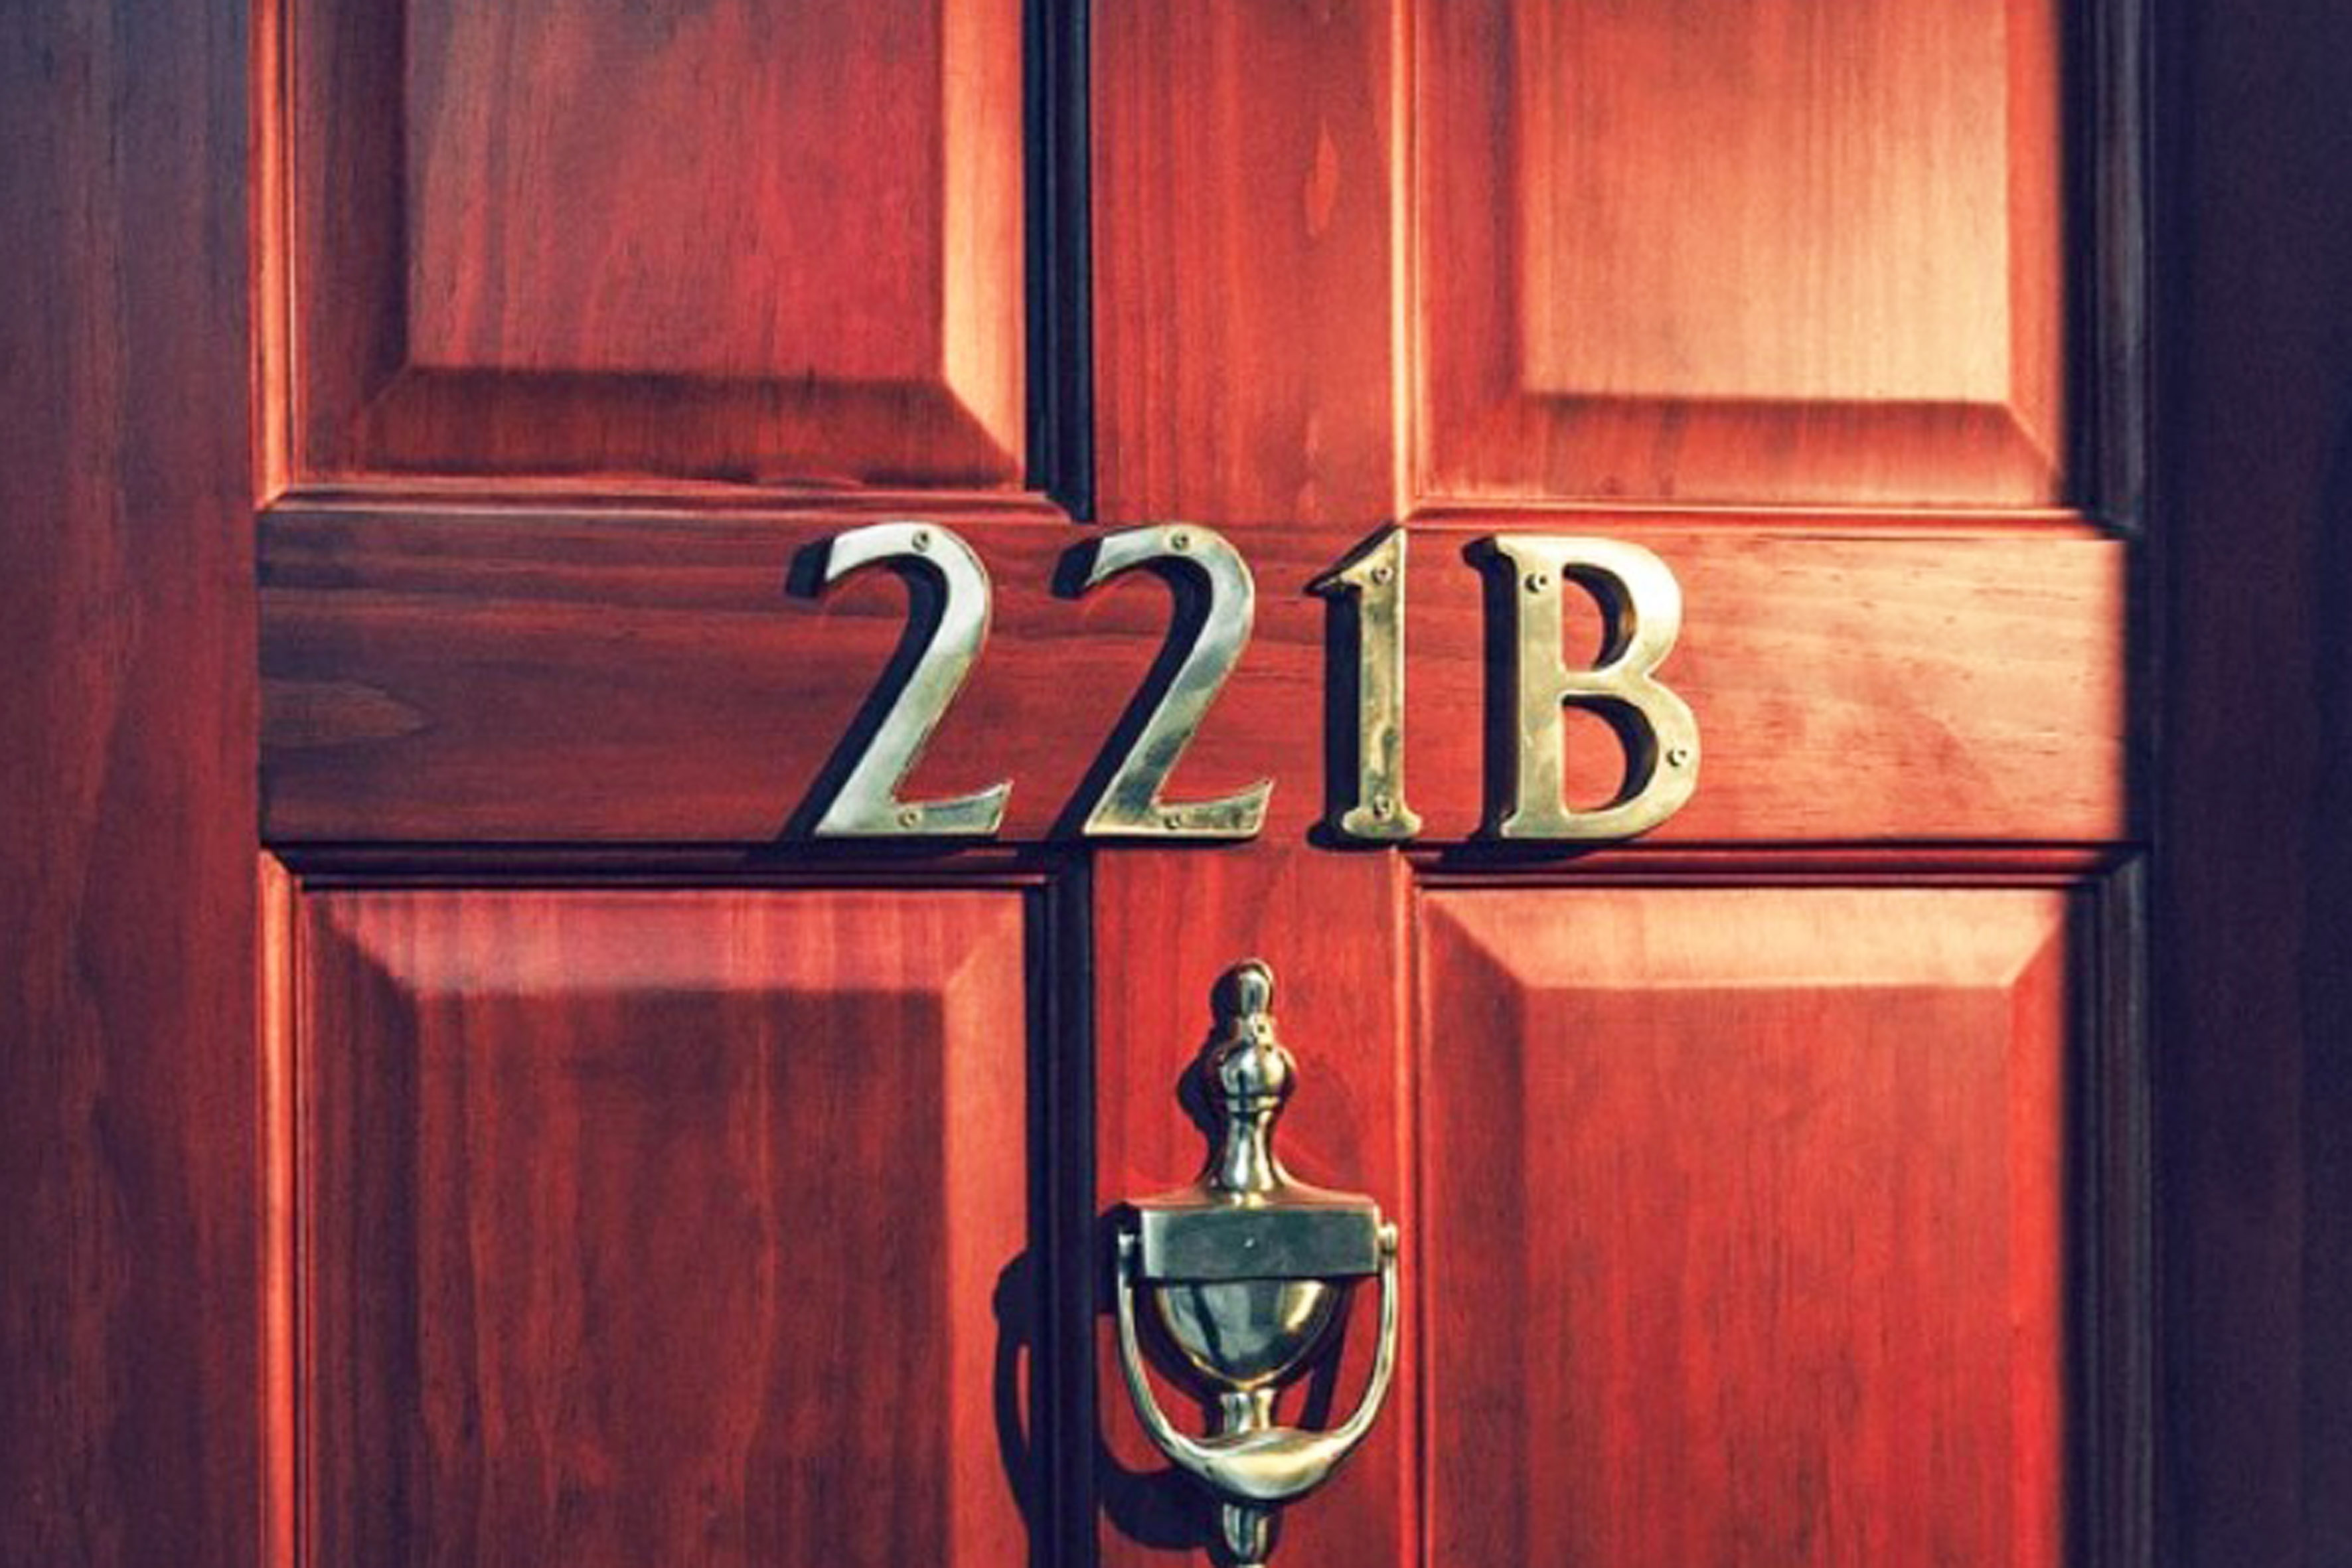 Цифра 1 для квартиры на дверь. Бейкер стрит 221 б. 221 Бейкер стрит номер на дверь. Номер квартиры. Цифры на дверь квартиры.